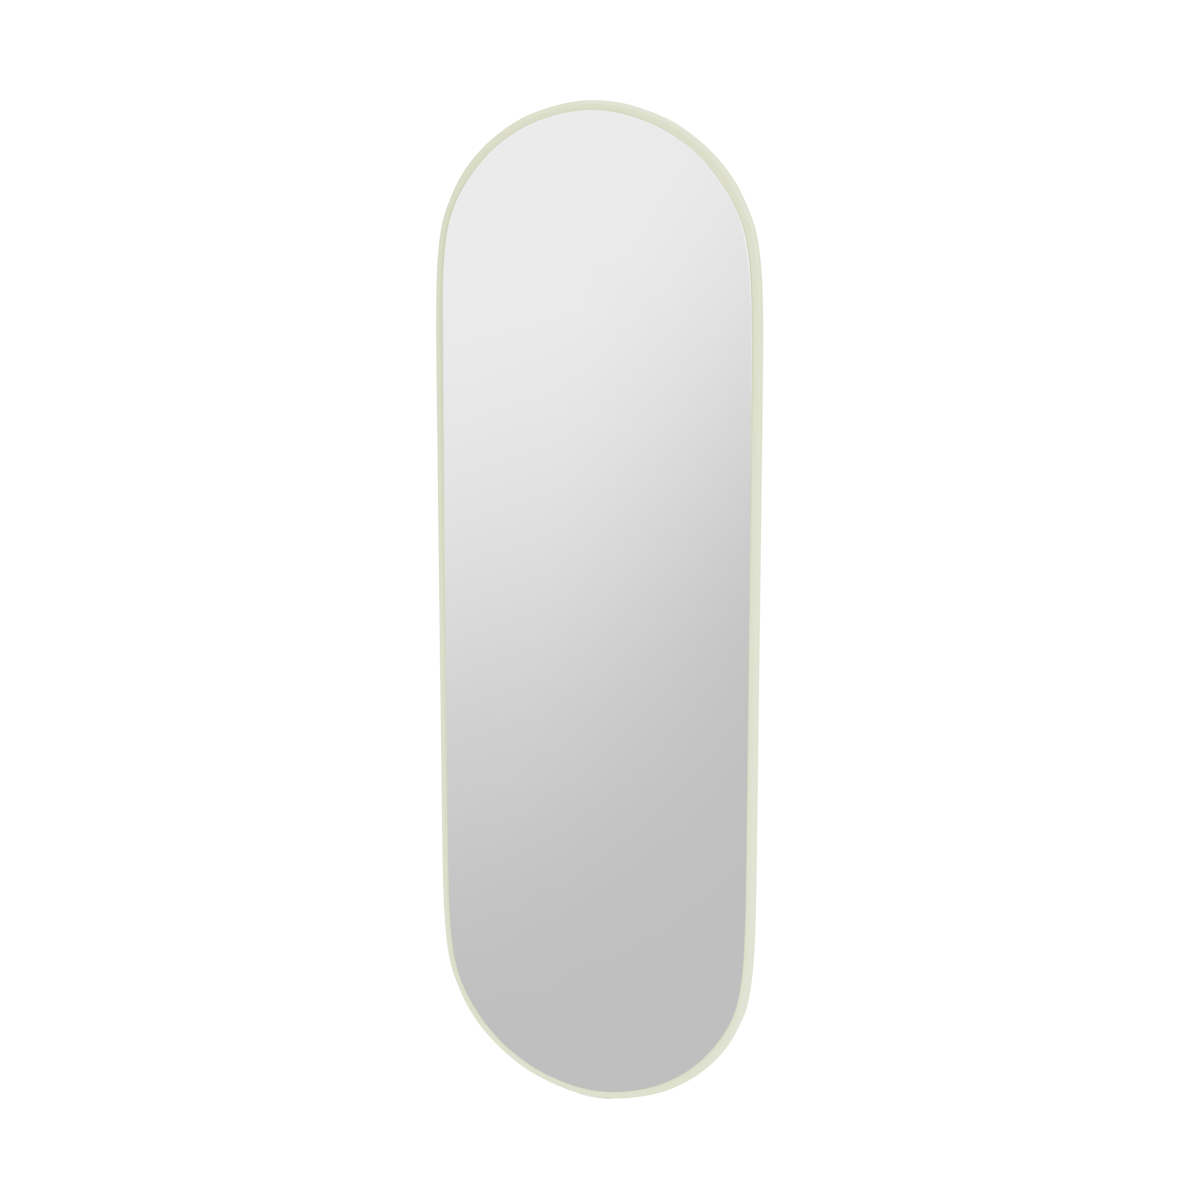 Montana FIGUUR Mirror Spiegel - SP824R Pomelo